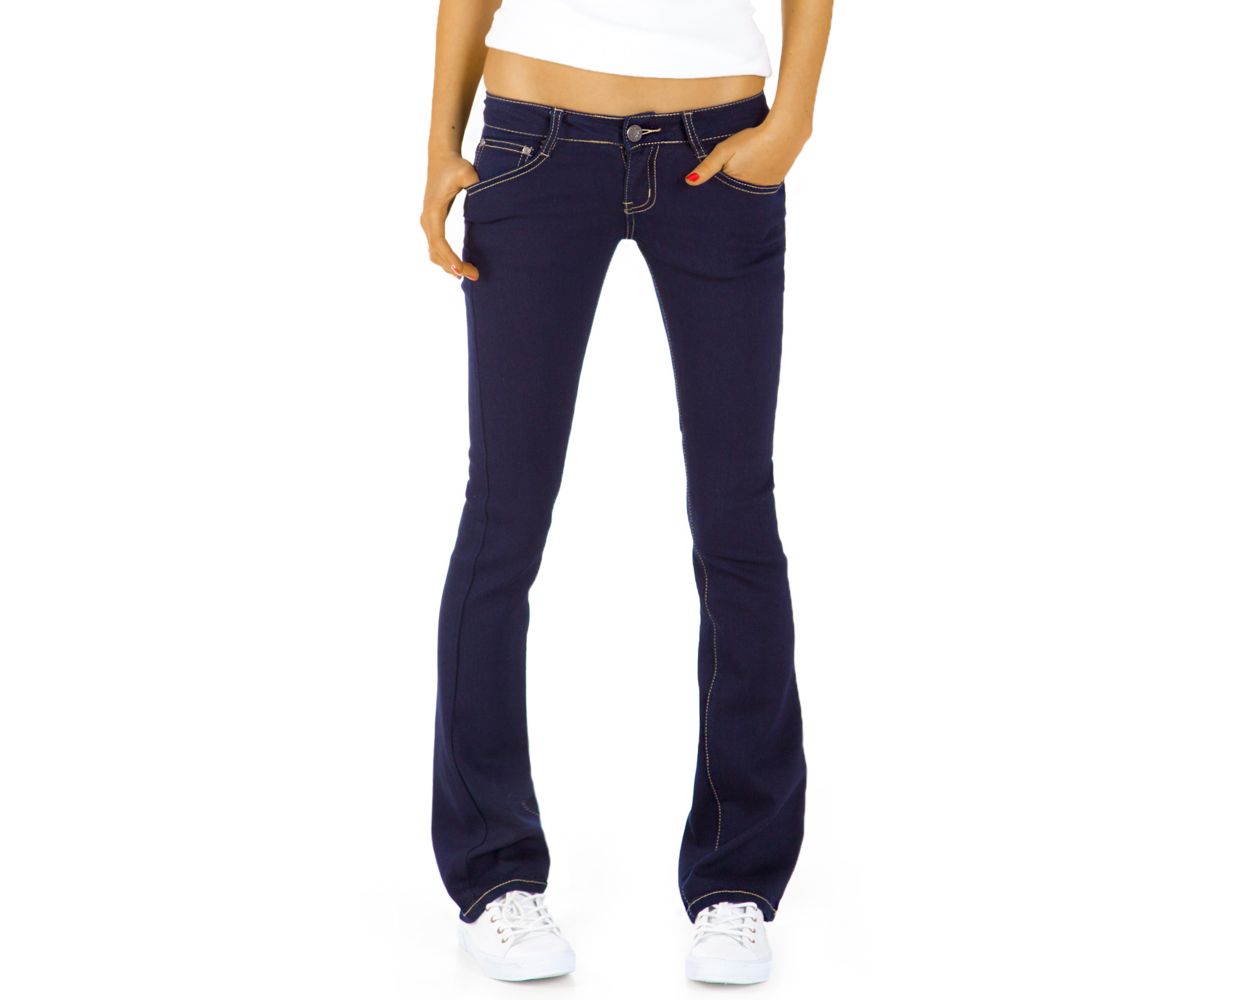 Be Styled Damen Bootcut Jeans Basic Schlaghose Mit Huftigem Bund J43kw